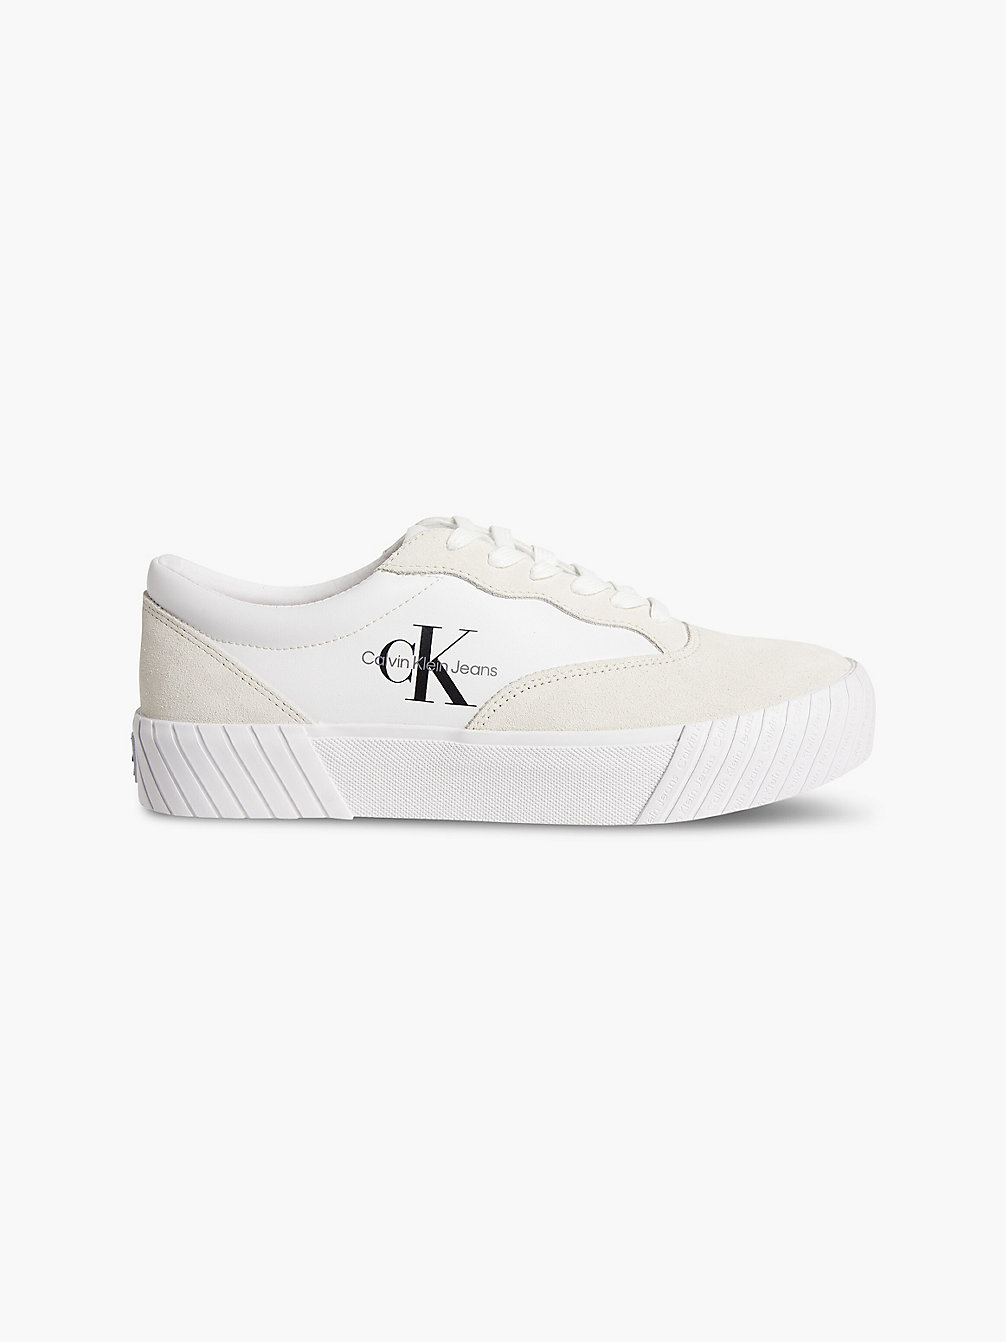 BRIGHT WHITE > Leder-Sneakers > undefined Herren - Calvin Klein